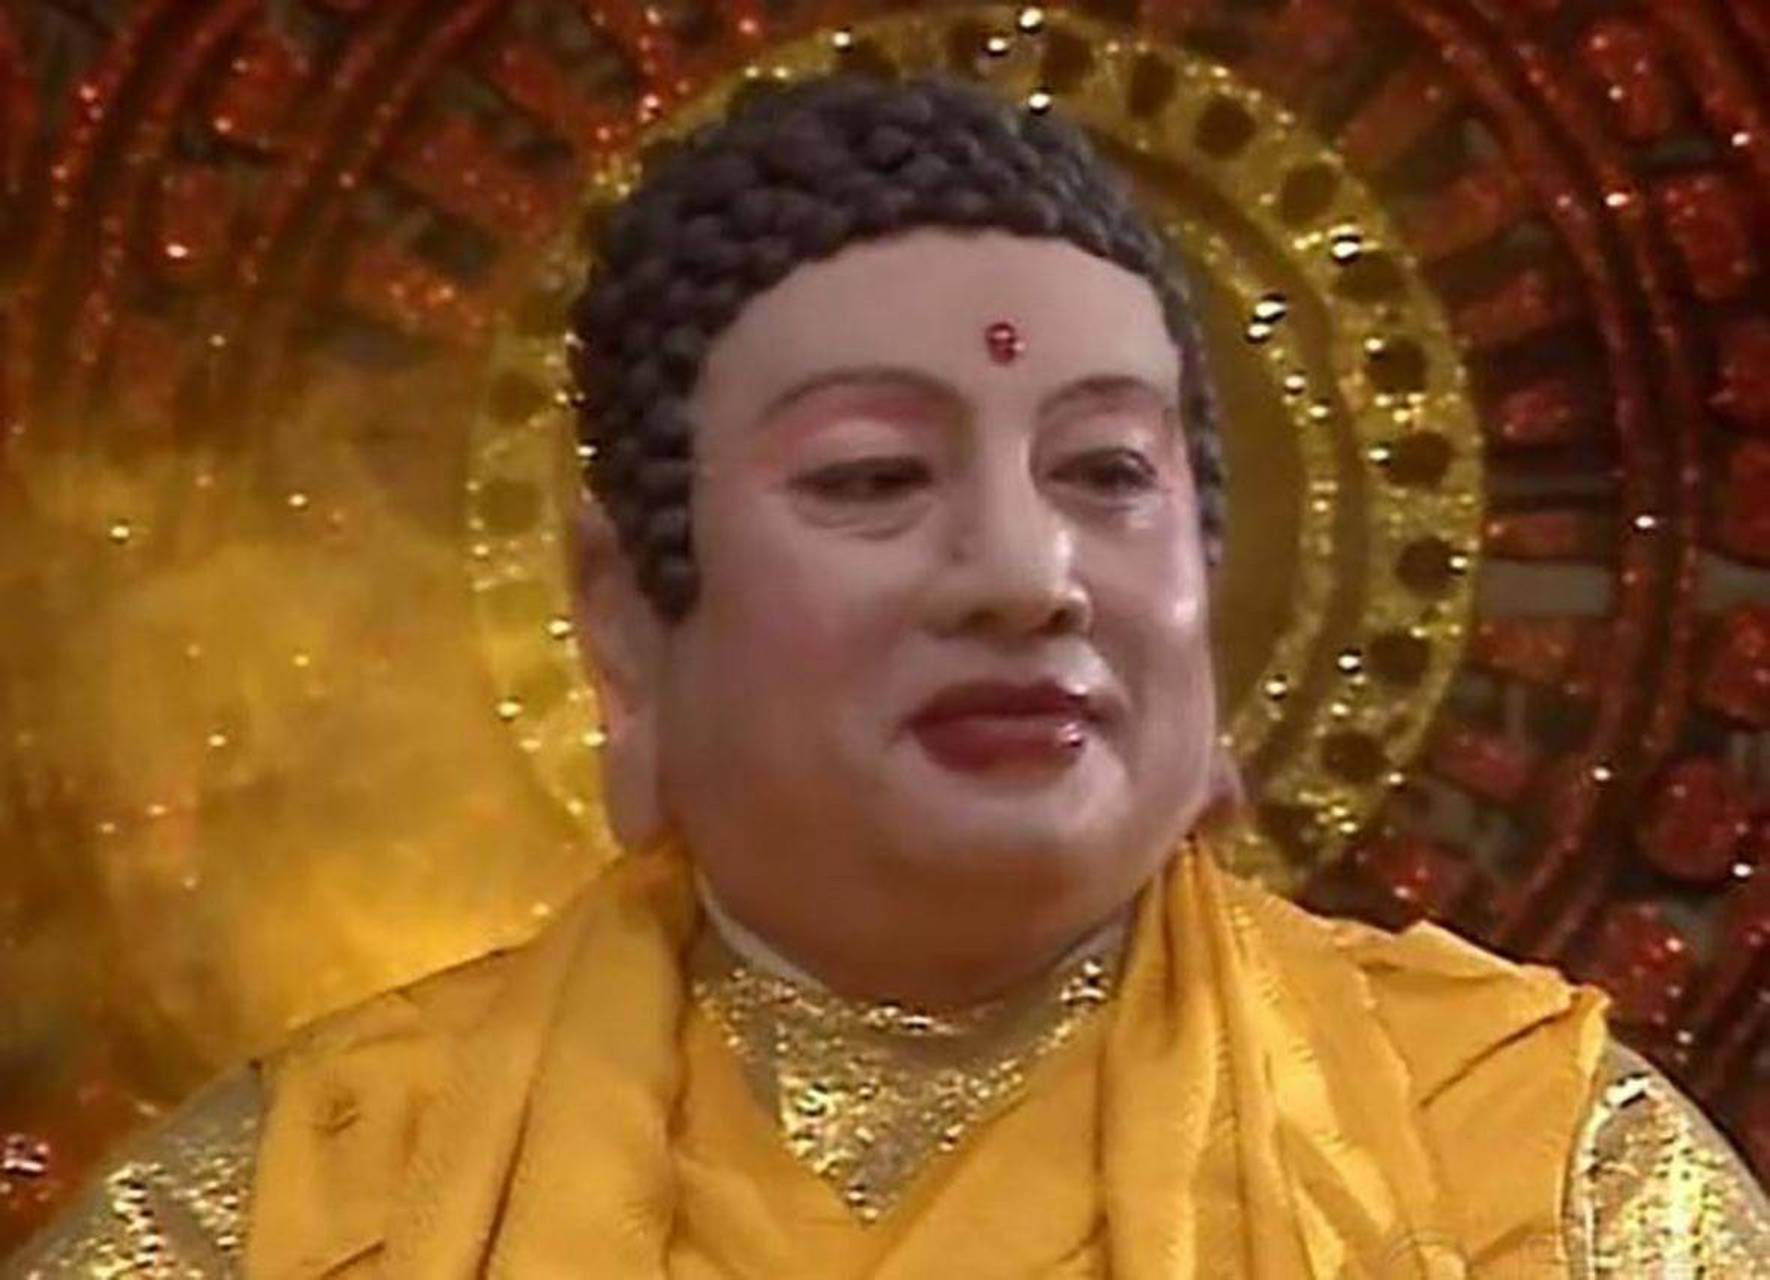 《西游记》中佛教的最高领袖叫做如来佛祖那么释迦牟尼是如来佛吗?